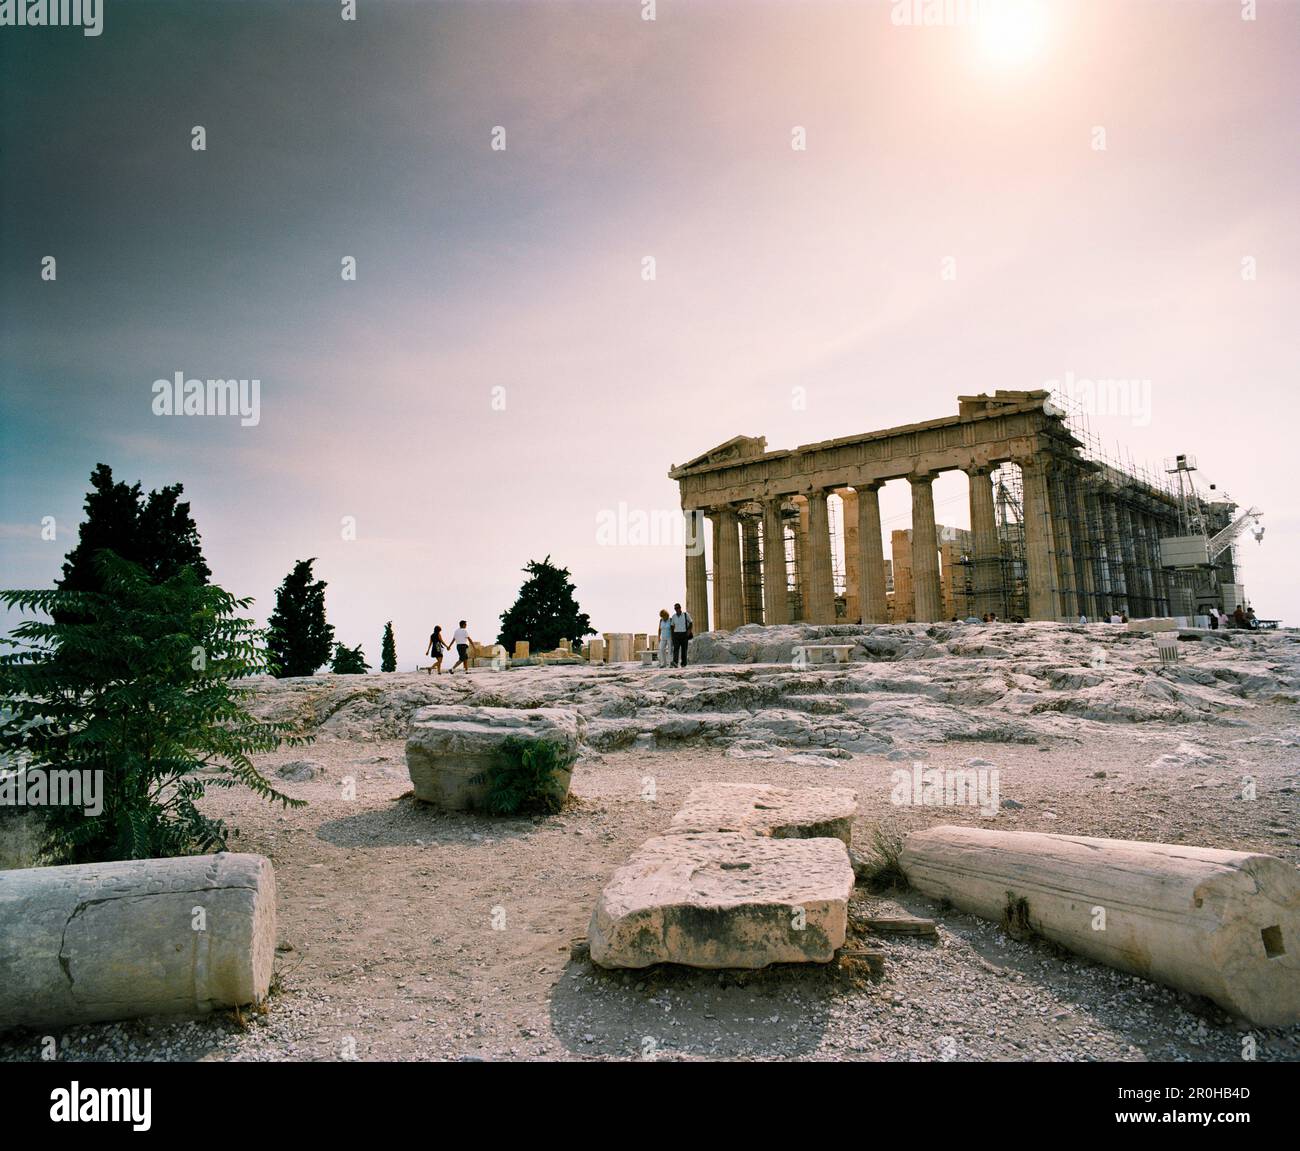 GREECE, Athens, the Parthenon at the Acropolis Stock Photo